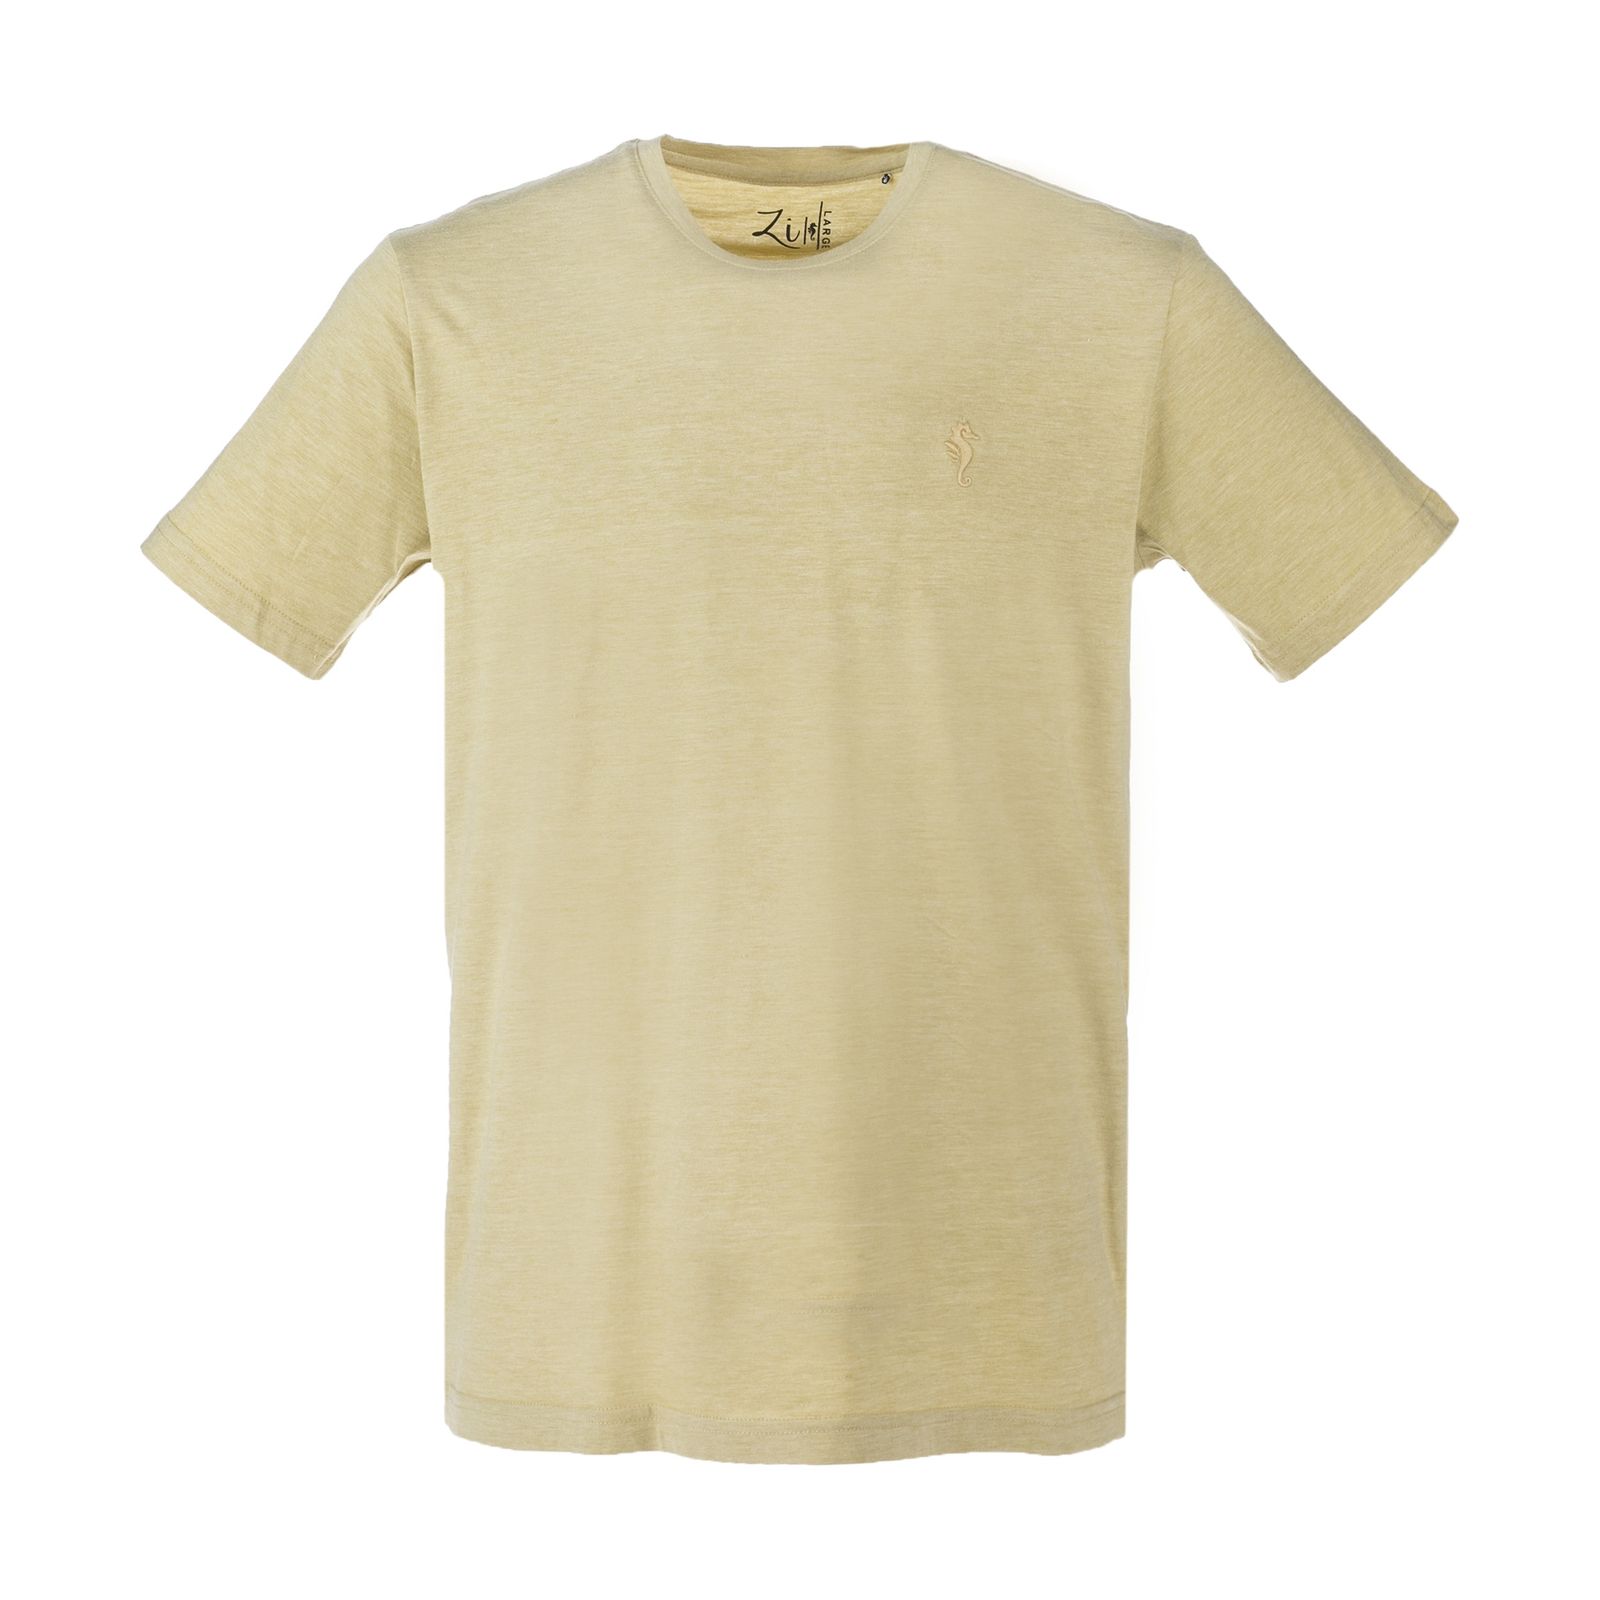 تی شرت مردانه زی سا مدل 153113141 -  - 1